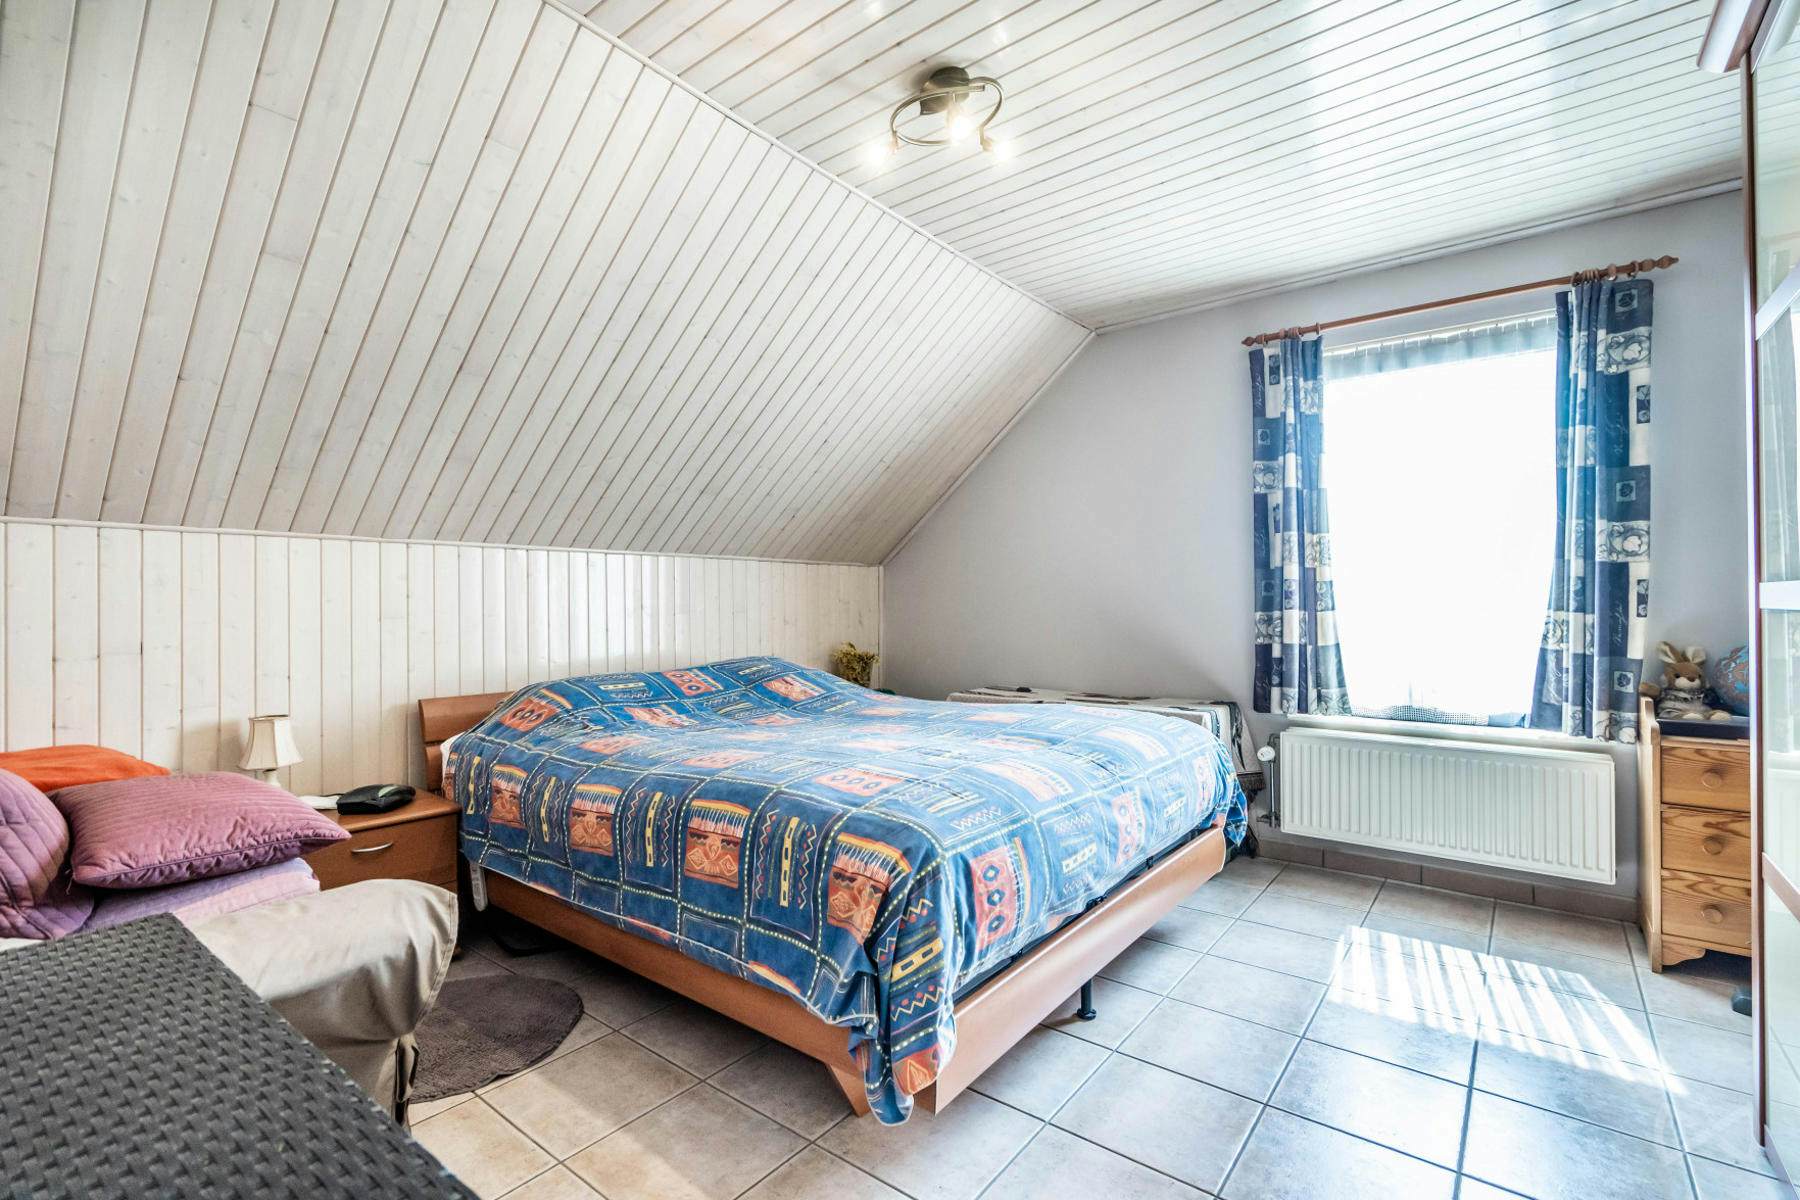 Picture 4 of 4 for Duplex with two bedrooms in Begijnendijk